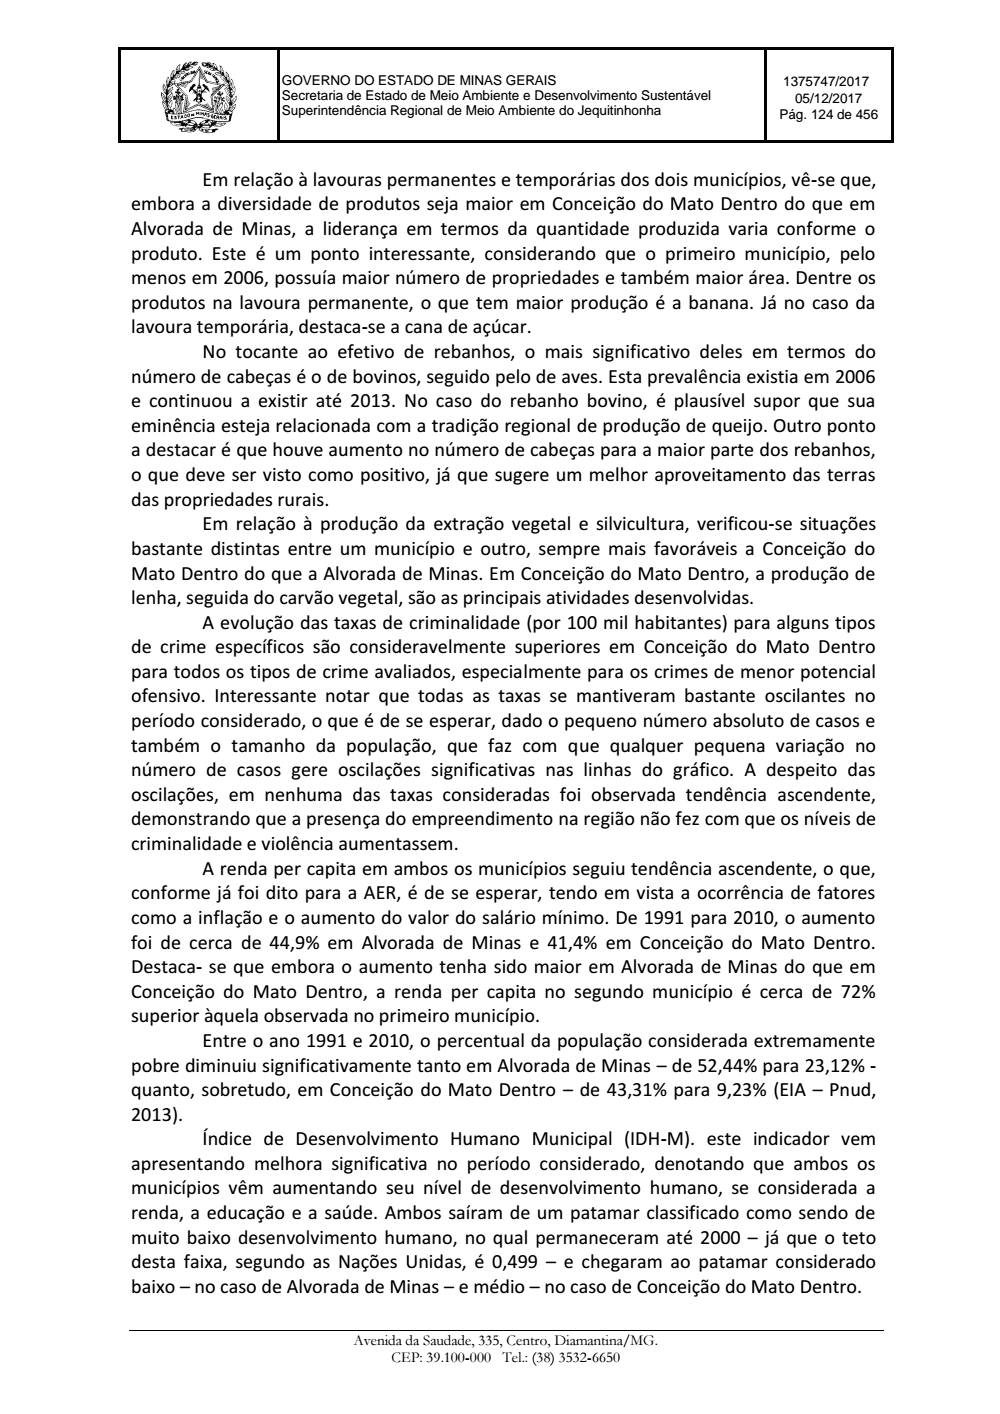 Page 124 from Parecer único da Secretaria de estado de Meio Ambiente e Desenvolvimento Sustentável (SEMAD)